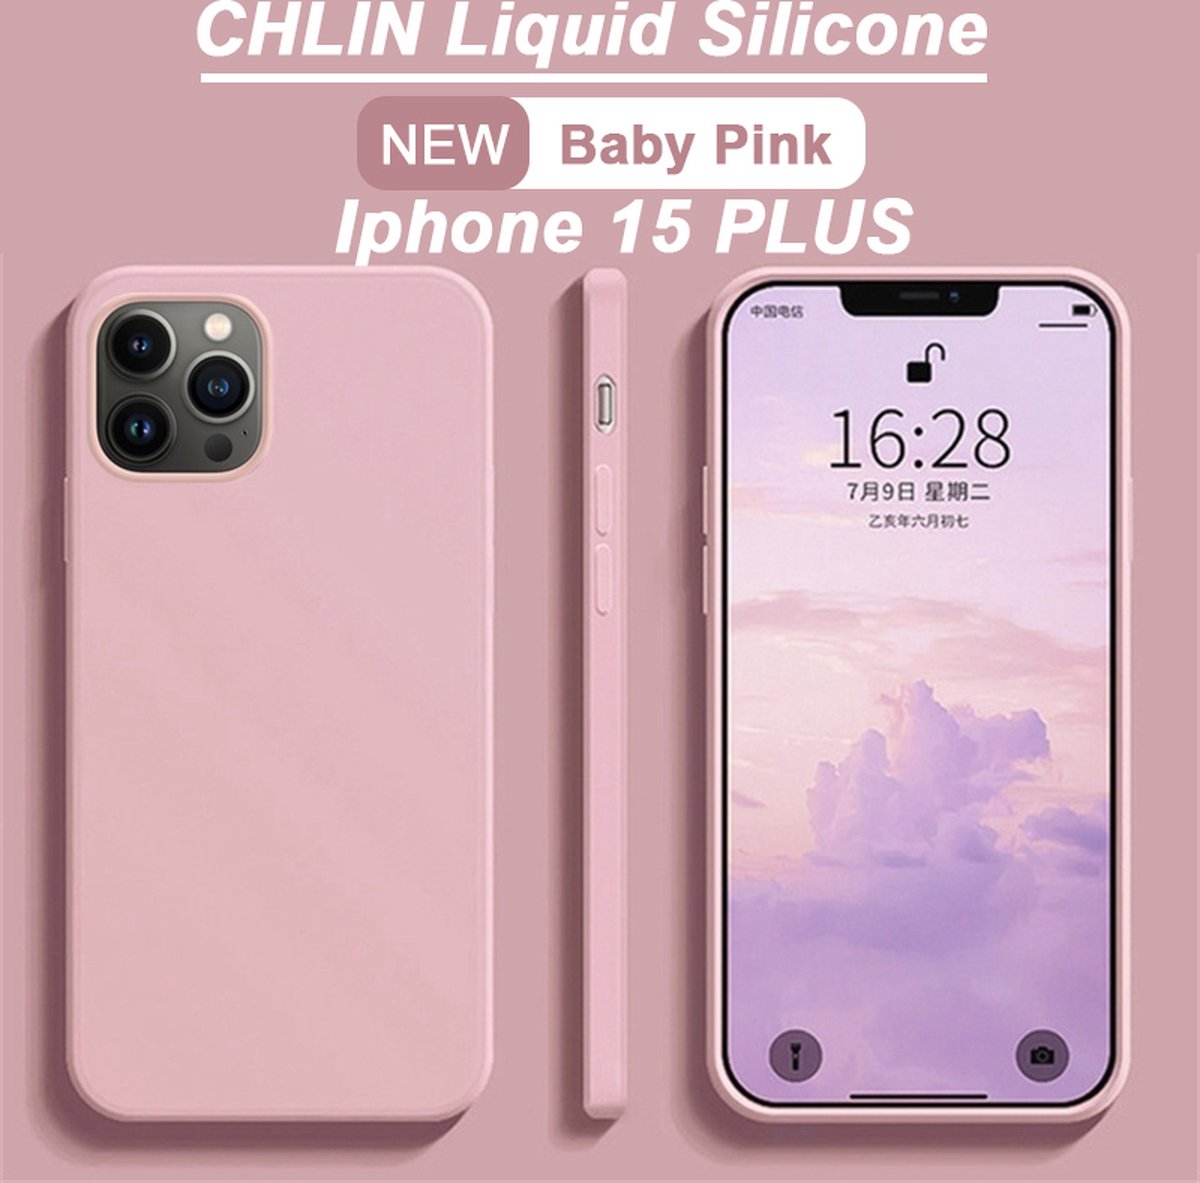 CL CHLIN® Premium Siliconen Case Iphone 15 Plus ROZE- Iphone 15 Plus hoesje - Iphone 15 Plus case - Iphone 15 Plus hoes - Silicone hoesje - Iphone 15 Plus protection - Iphone 15 Plus protector.